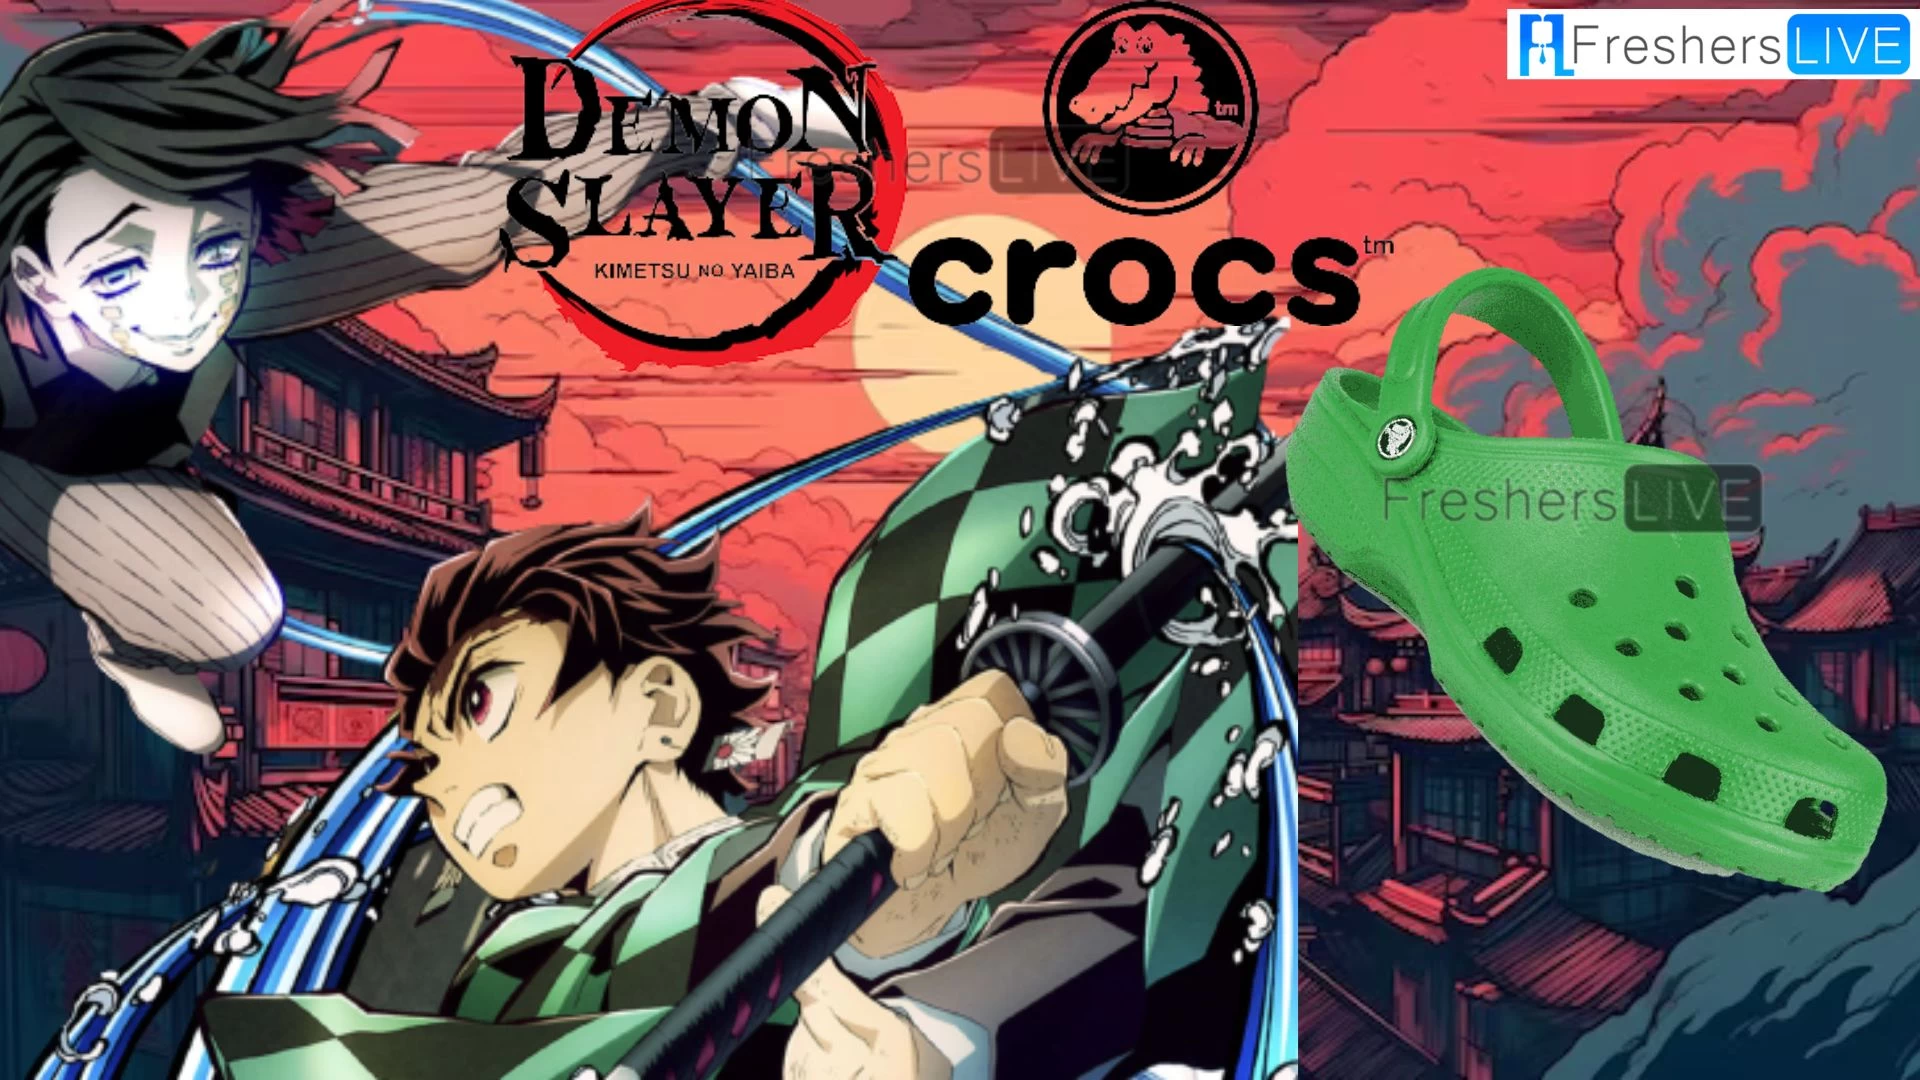 Colaboración Demon Slayer X Crocs, conozca todo sobre la colaboración aquí